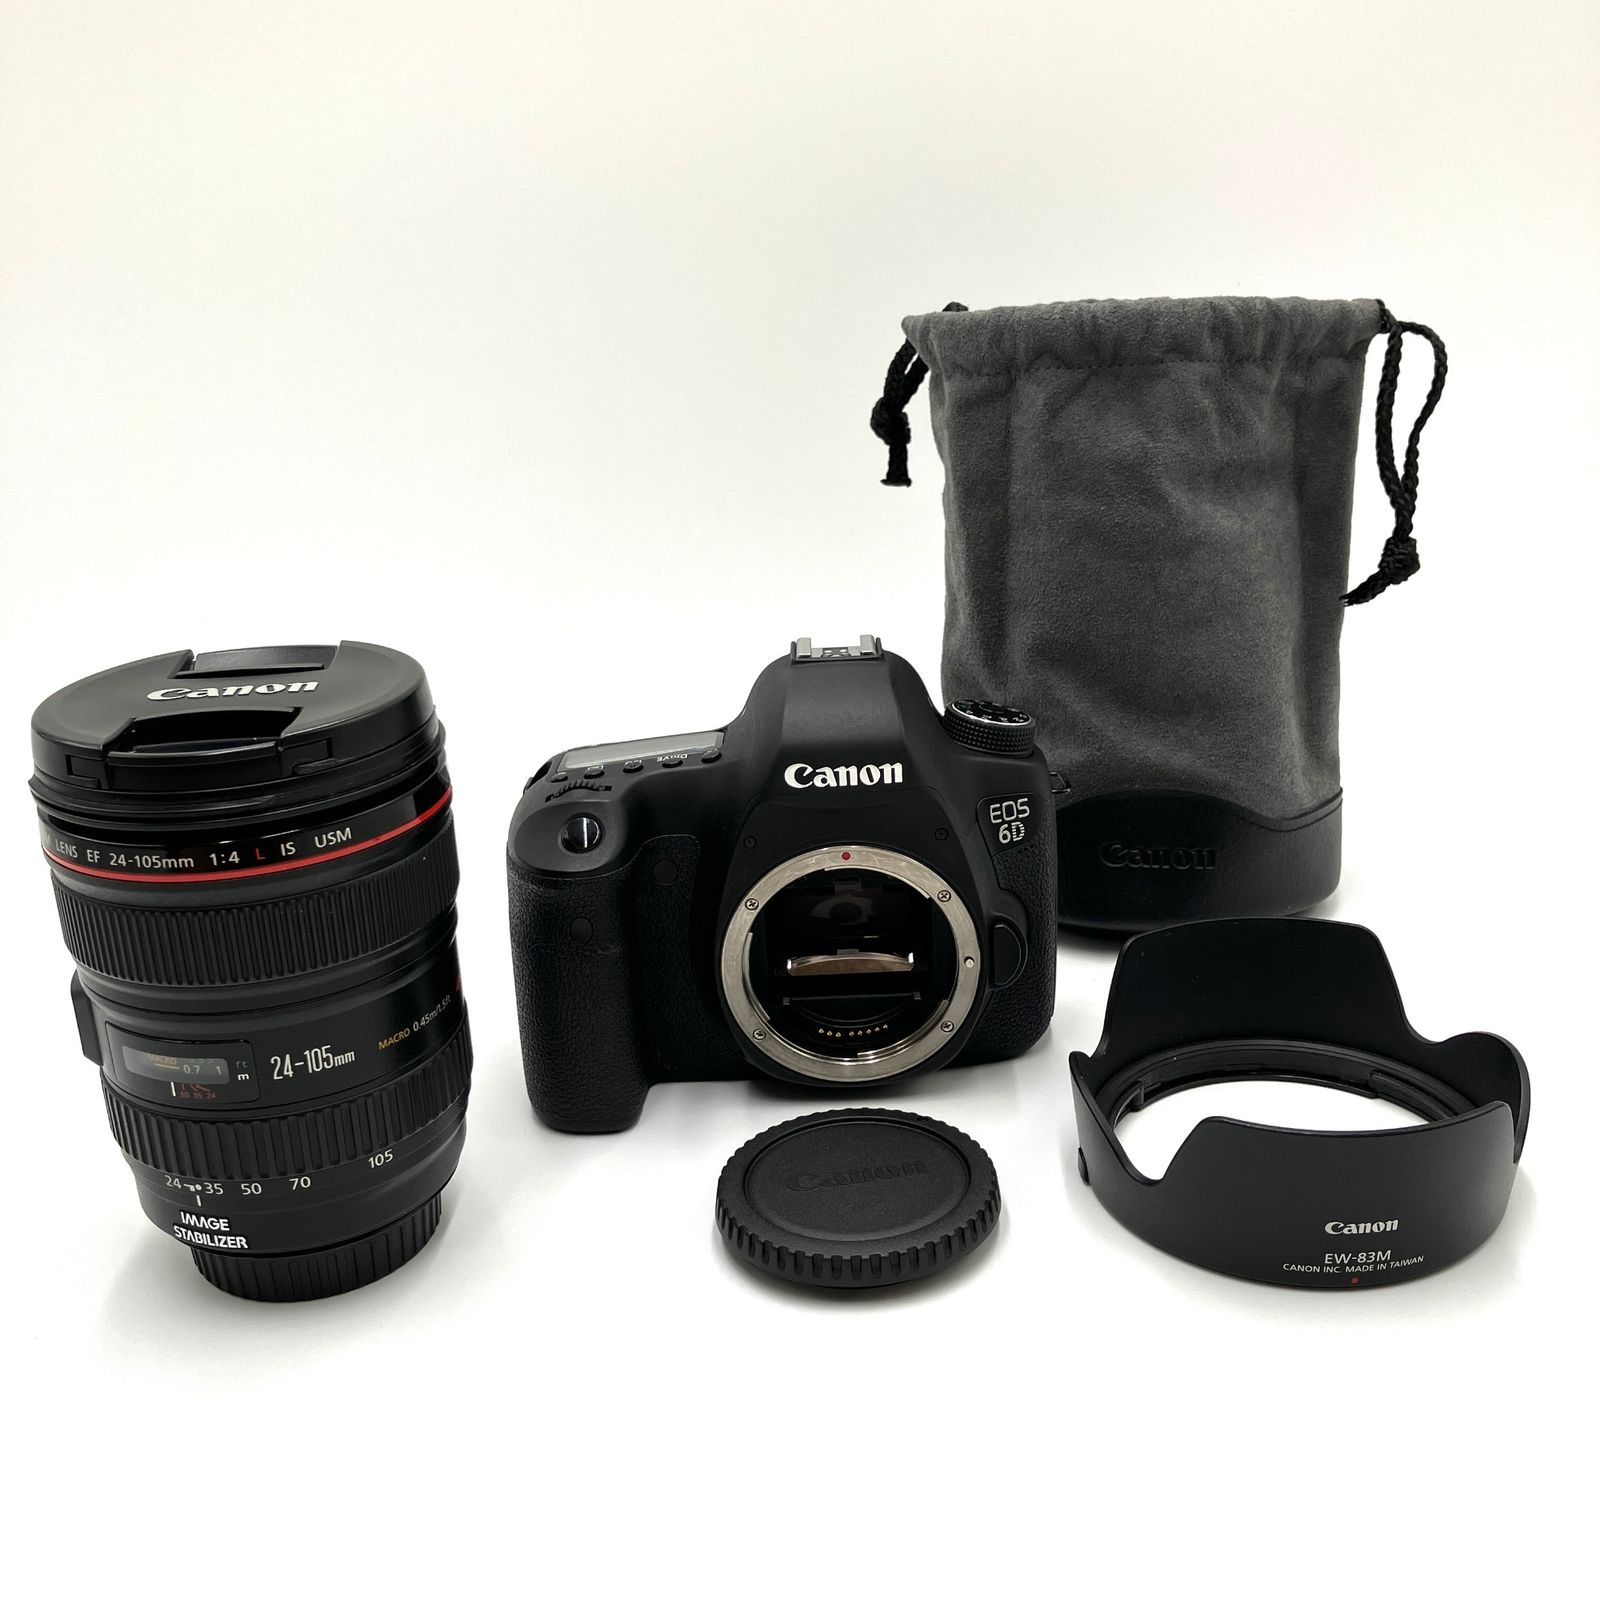 Canon デジタル一眼レフカメラ EOS 6D レンズキット EF24-105mm F4L IS USM付属 EOS6D24105ISLK